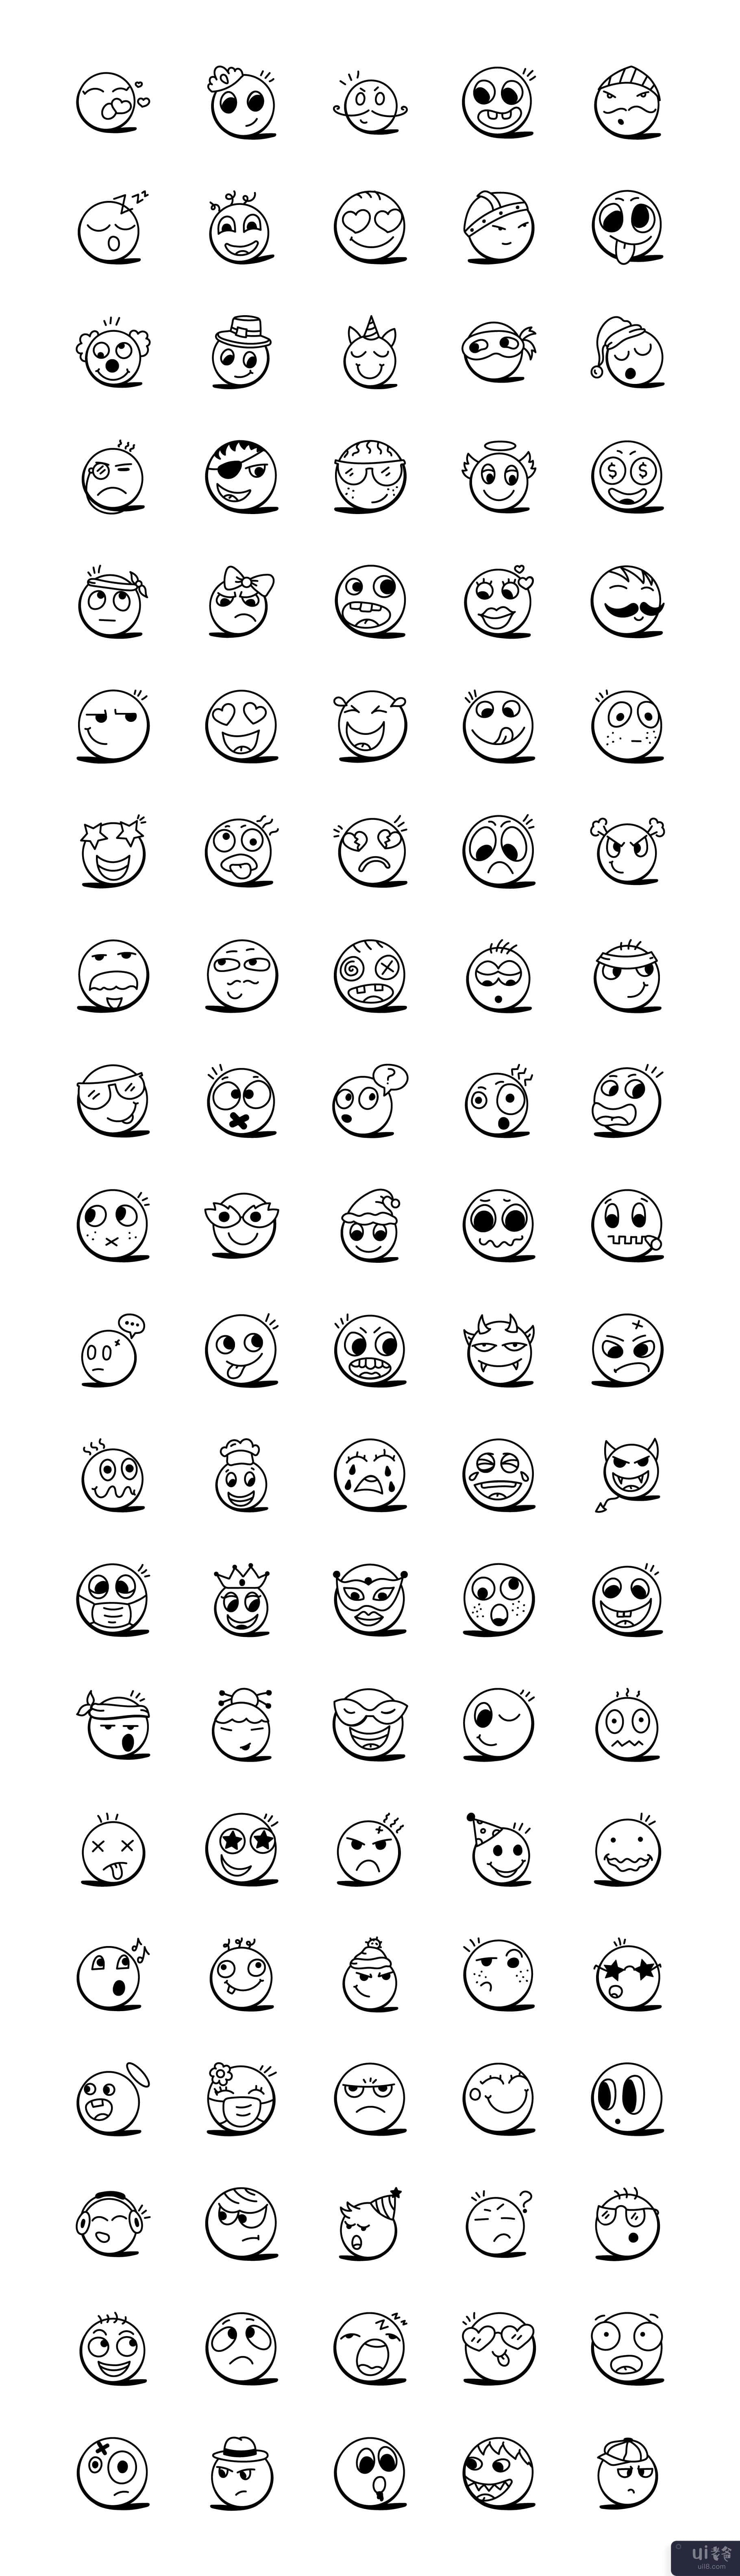 笑脸和表情符号图标的集合(Collection of Smileys and Emoji Icons)插图